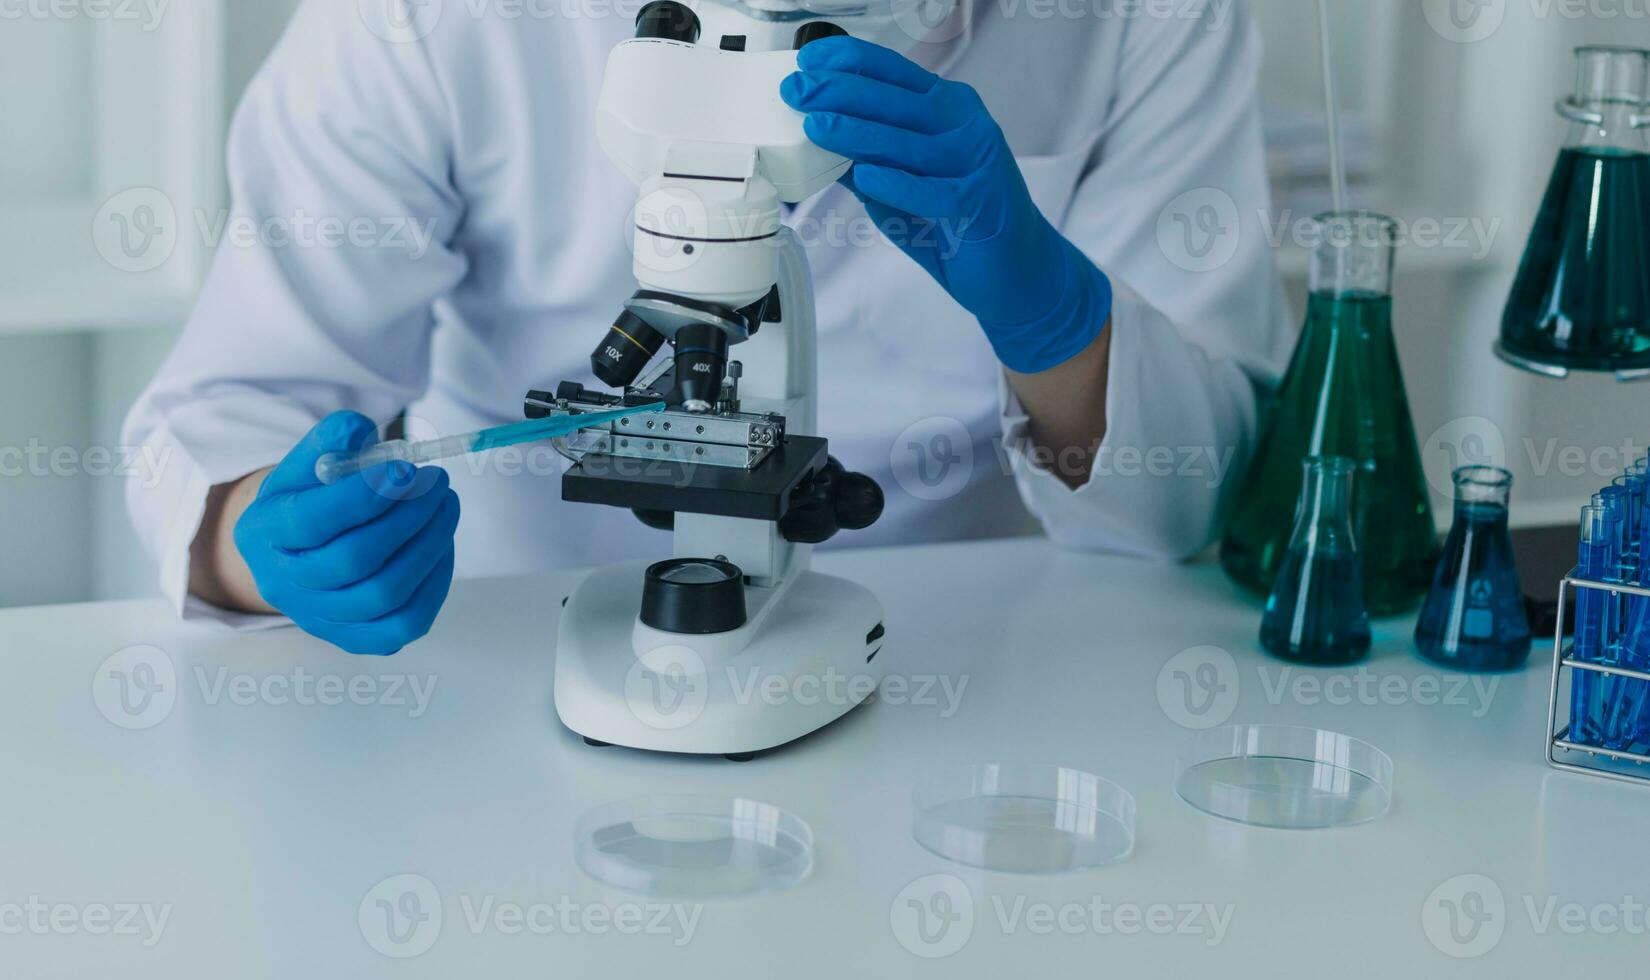 medicinsk utveckling laboratorium caucasian kvinna forskare ser under mikroskop, analyser petri maträtt prov. specialister arbetssätt på medicin, bioteknik forskning i Avancerad pharma labb foto